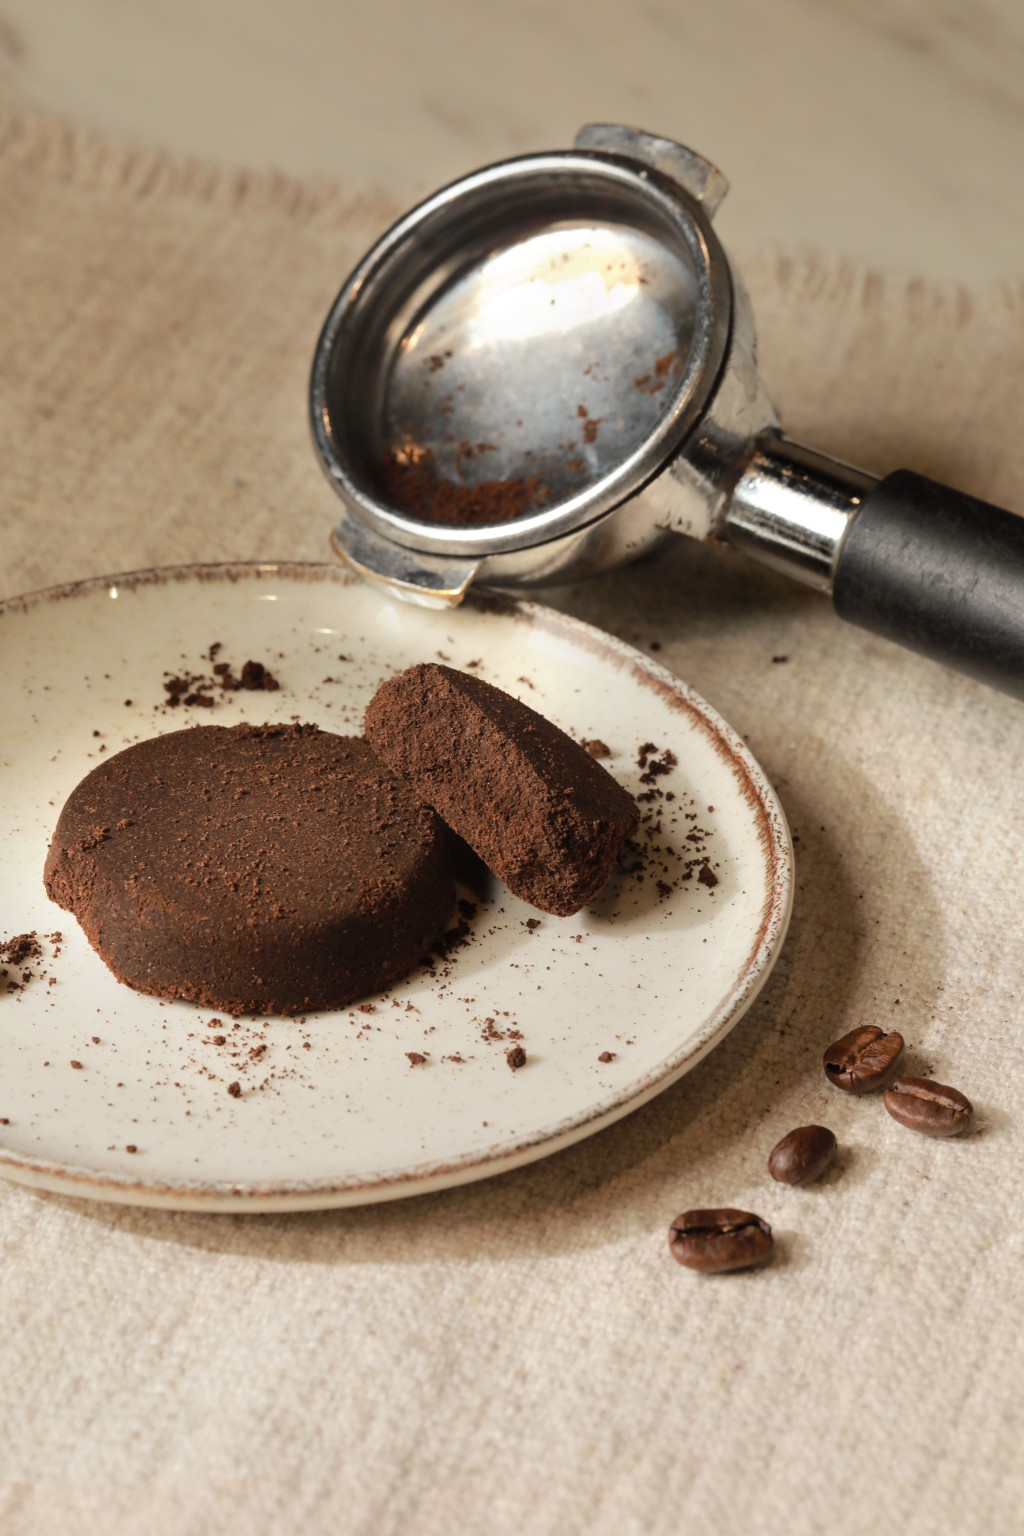 咖啡节期间更免费派发咖啡渣， 鼓励大家在生活里善用咖啡渣。（图片来源：agnès b.）